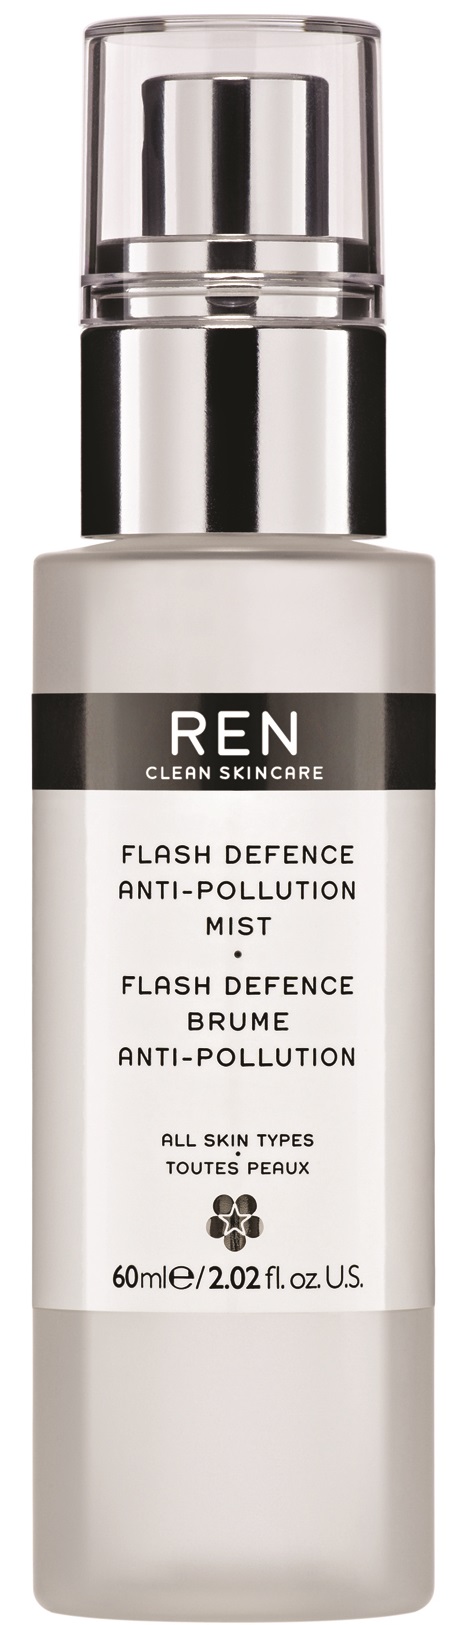 REN Flash Defence Anti-Pollution Mist